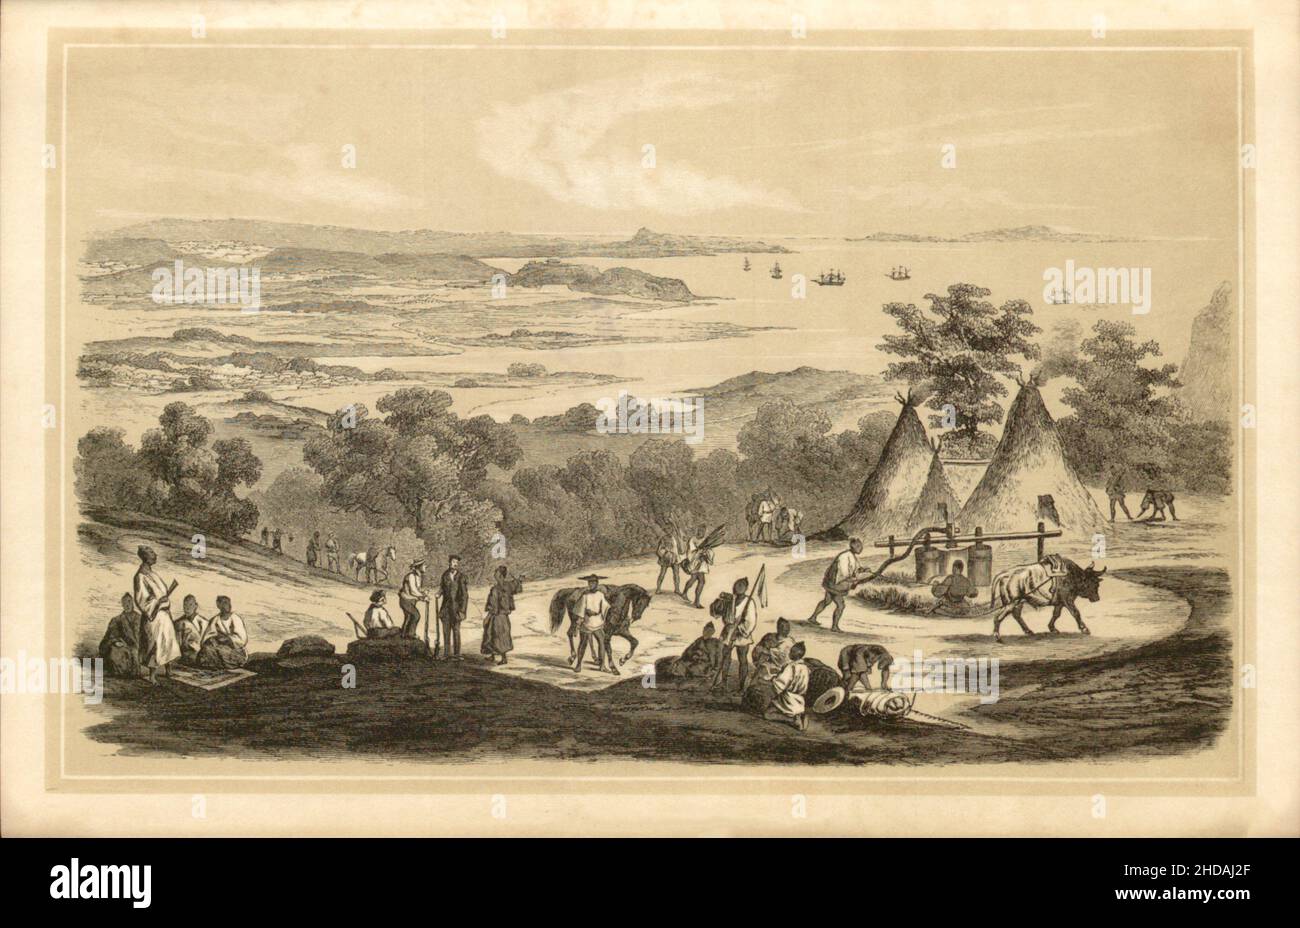 Lithographie antique du Japon du 19th siècle : vue de Napa aux îles Ryukyu.1856 expédition du Commodore Perry Banque D'Images